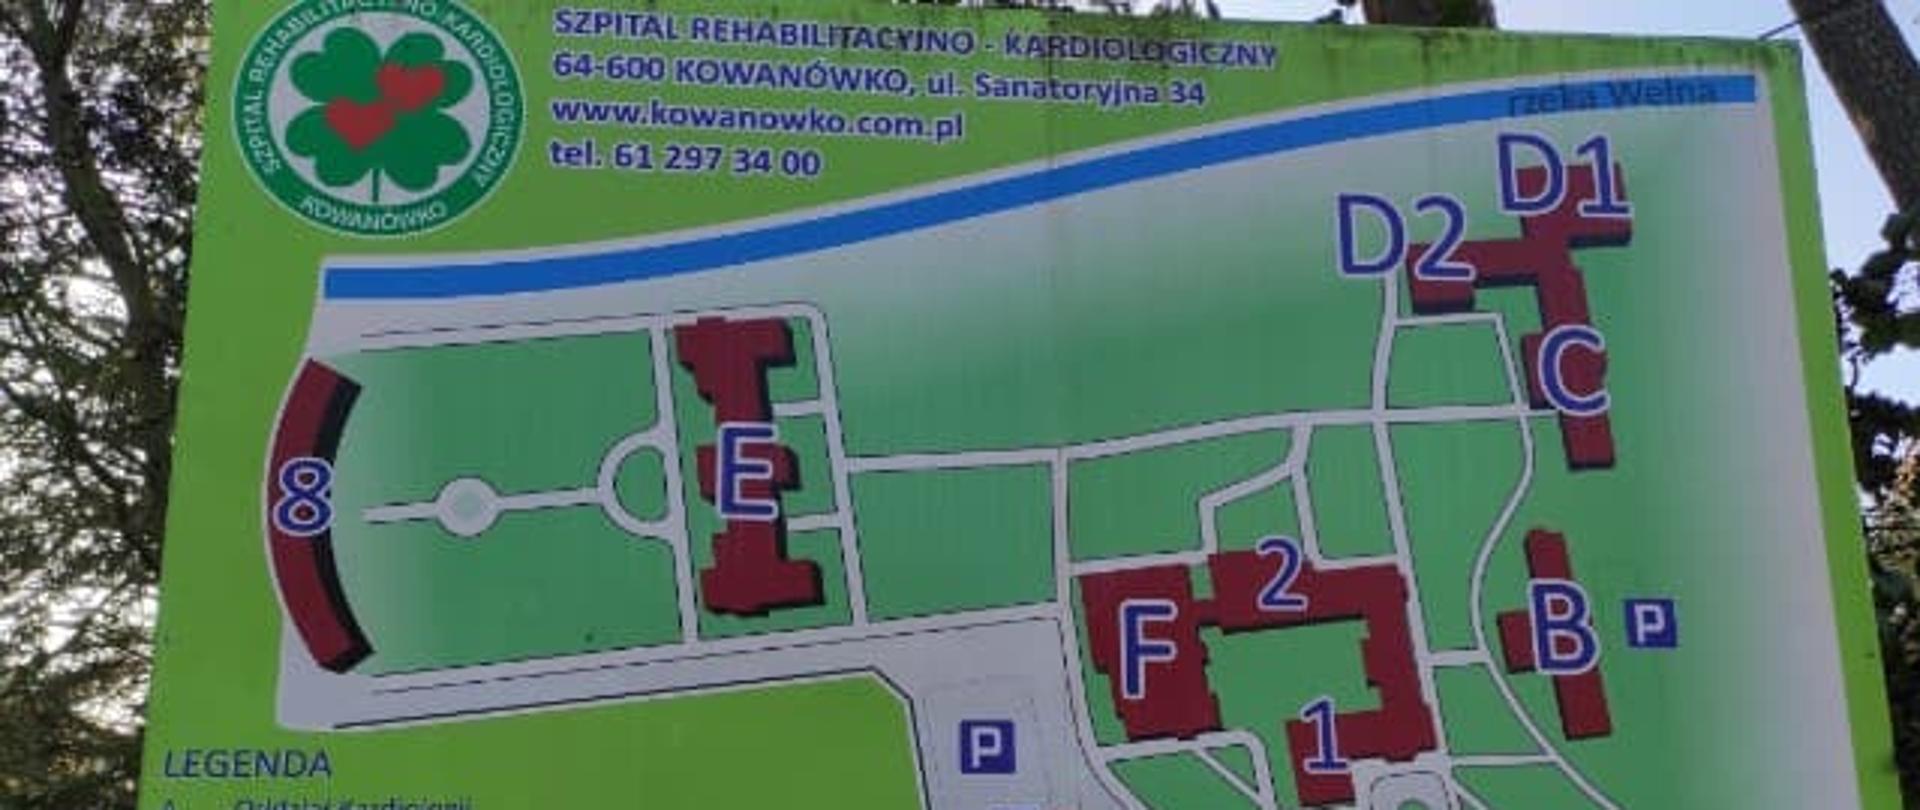 Rozpoznanie operacyjne Szpitala Wojewódzkiego w Poznaniu - Filia nr 2 Szpital Rehabilitacyjno – Kardiologiczny w Kowanówku.